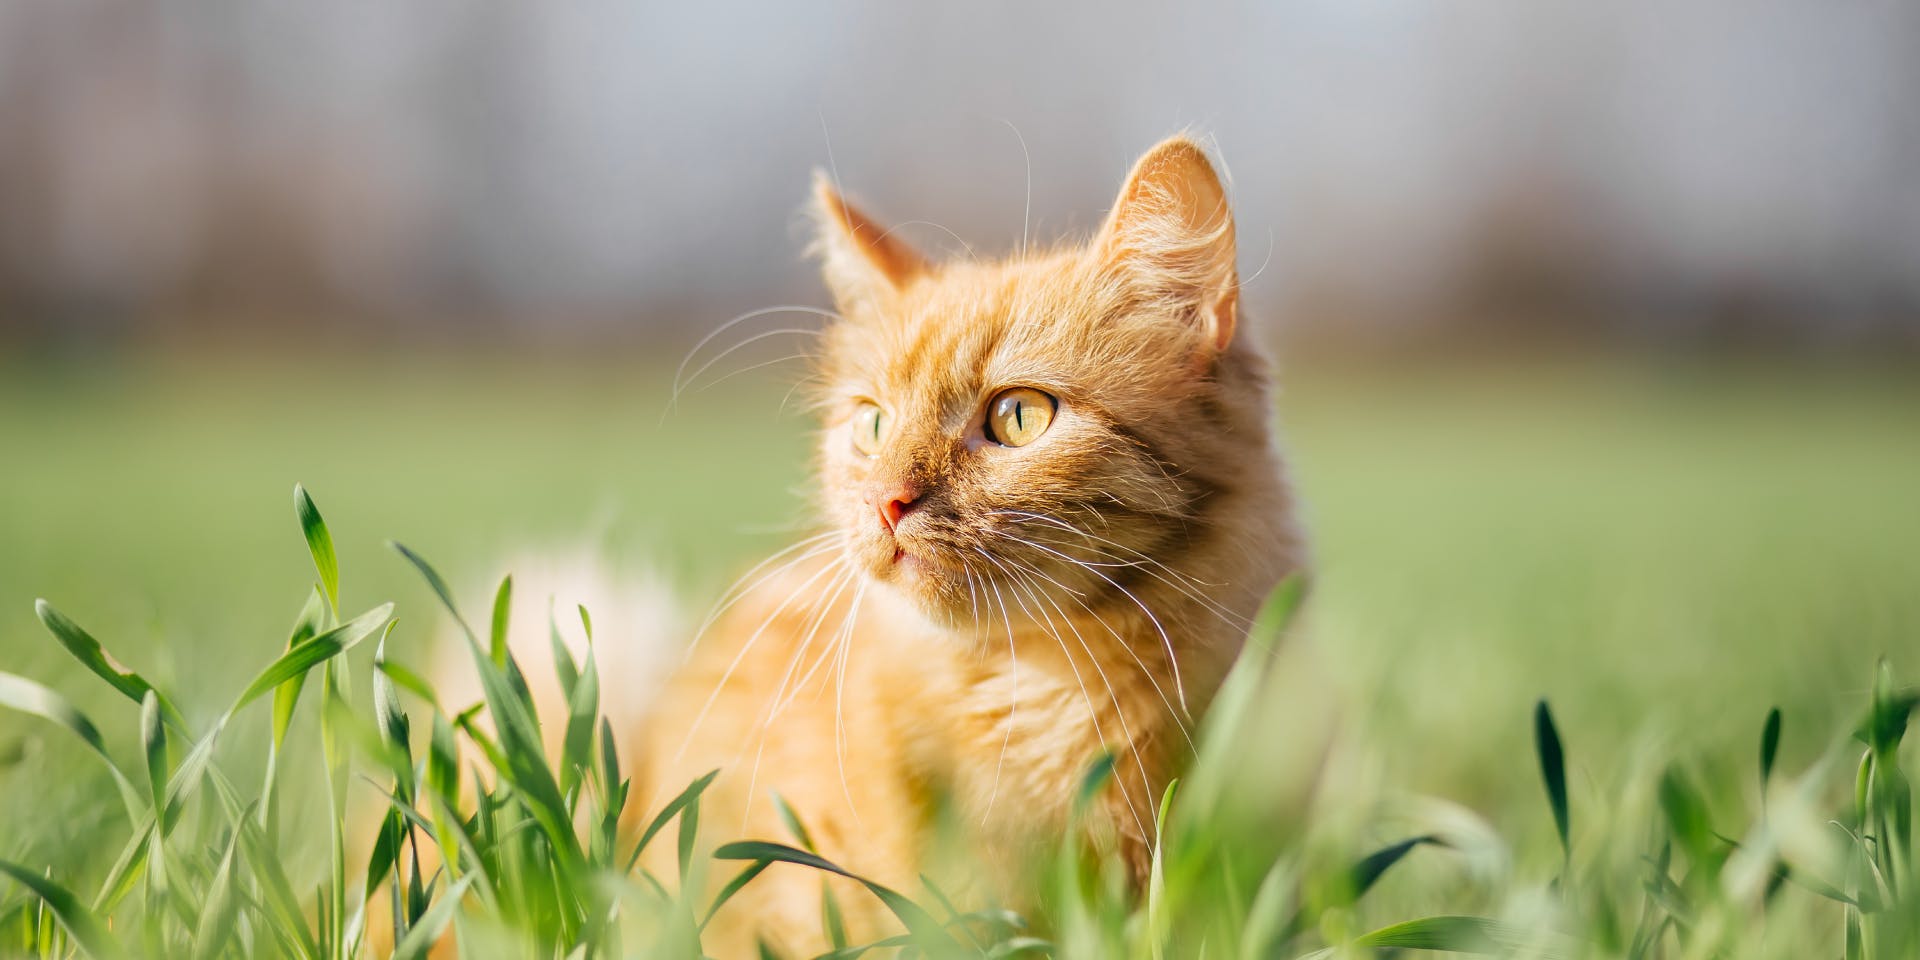 An orange cat in the garden.